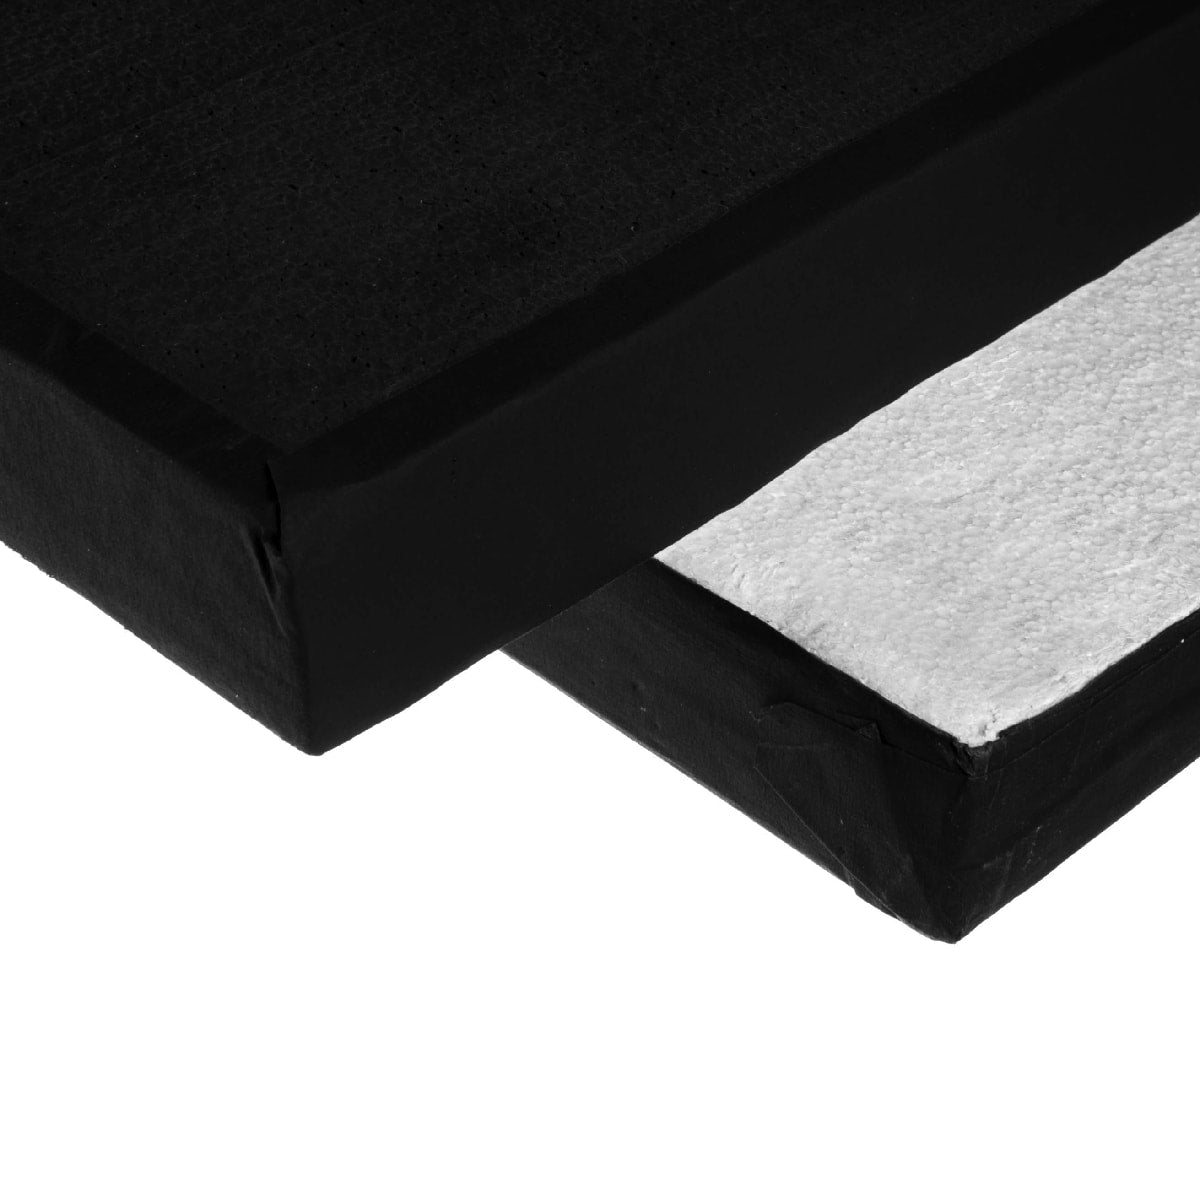  Polyboard black/white 120 x 200 cm / 4 x 6,5' (purchase)